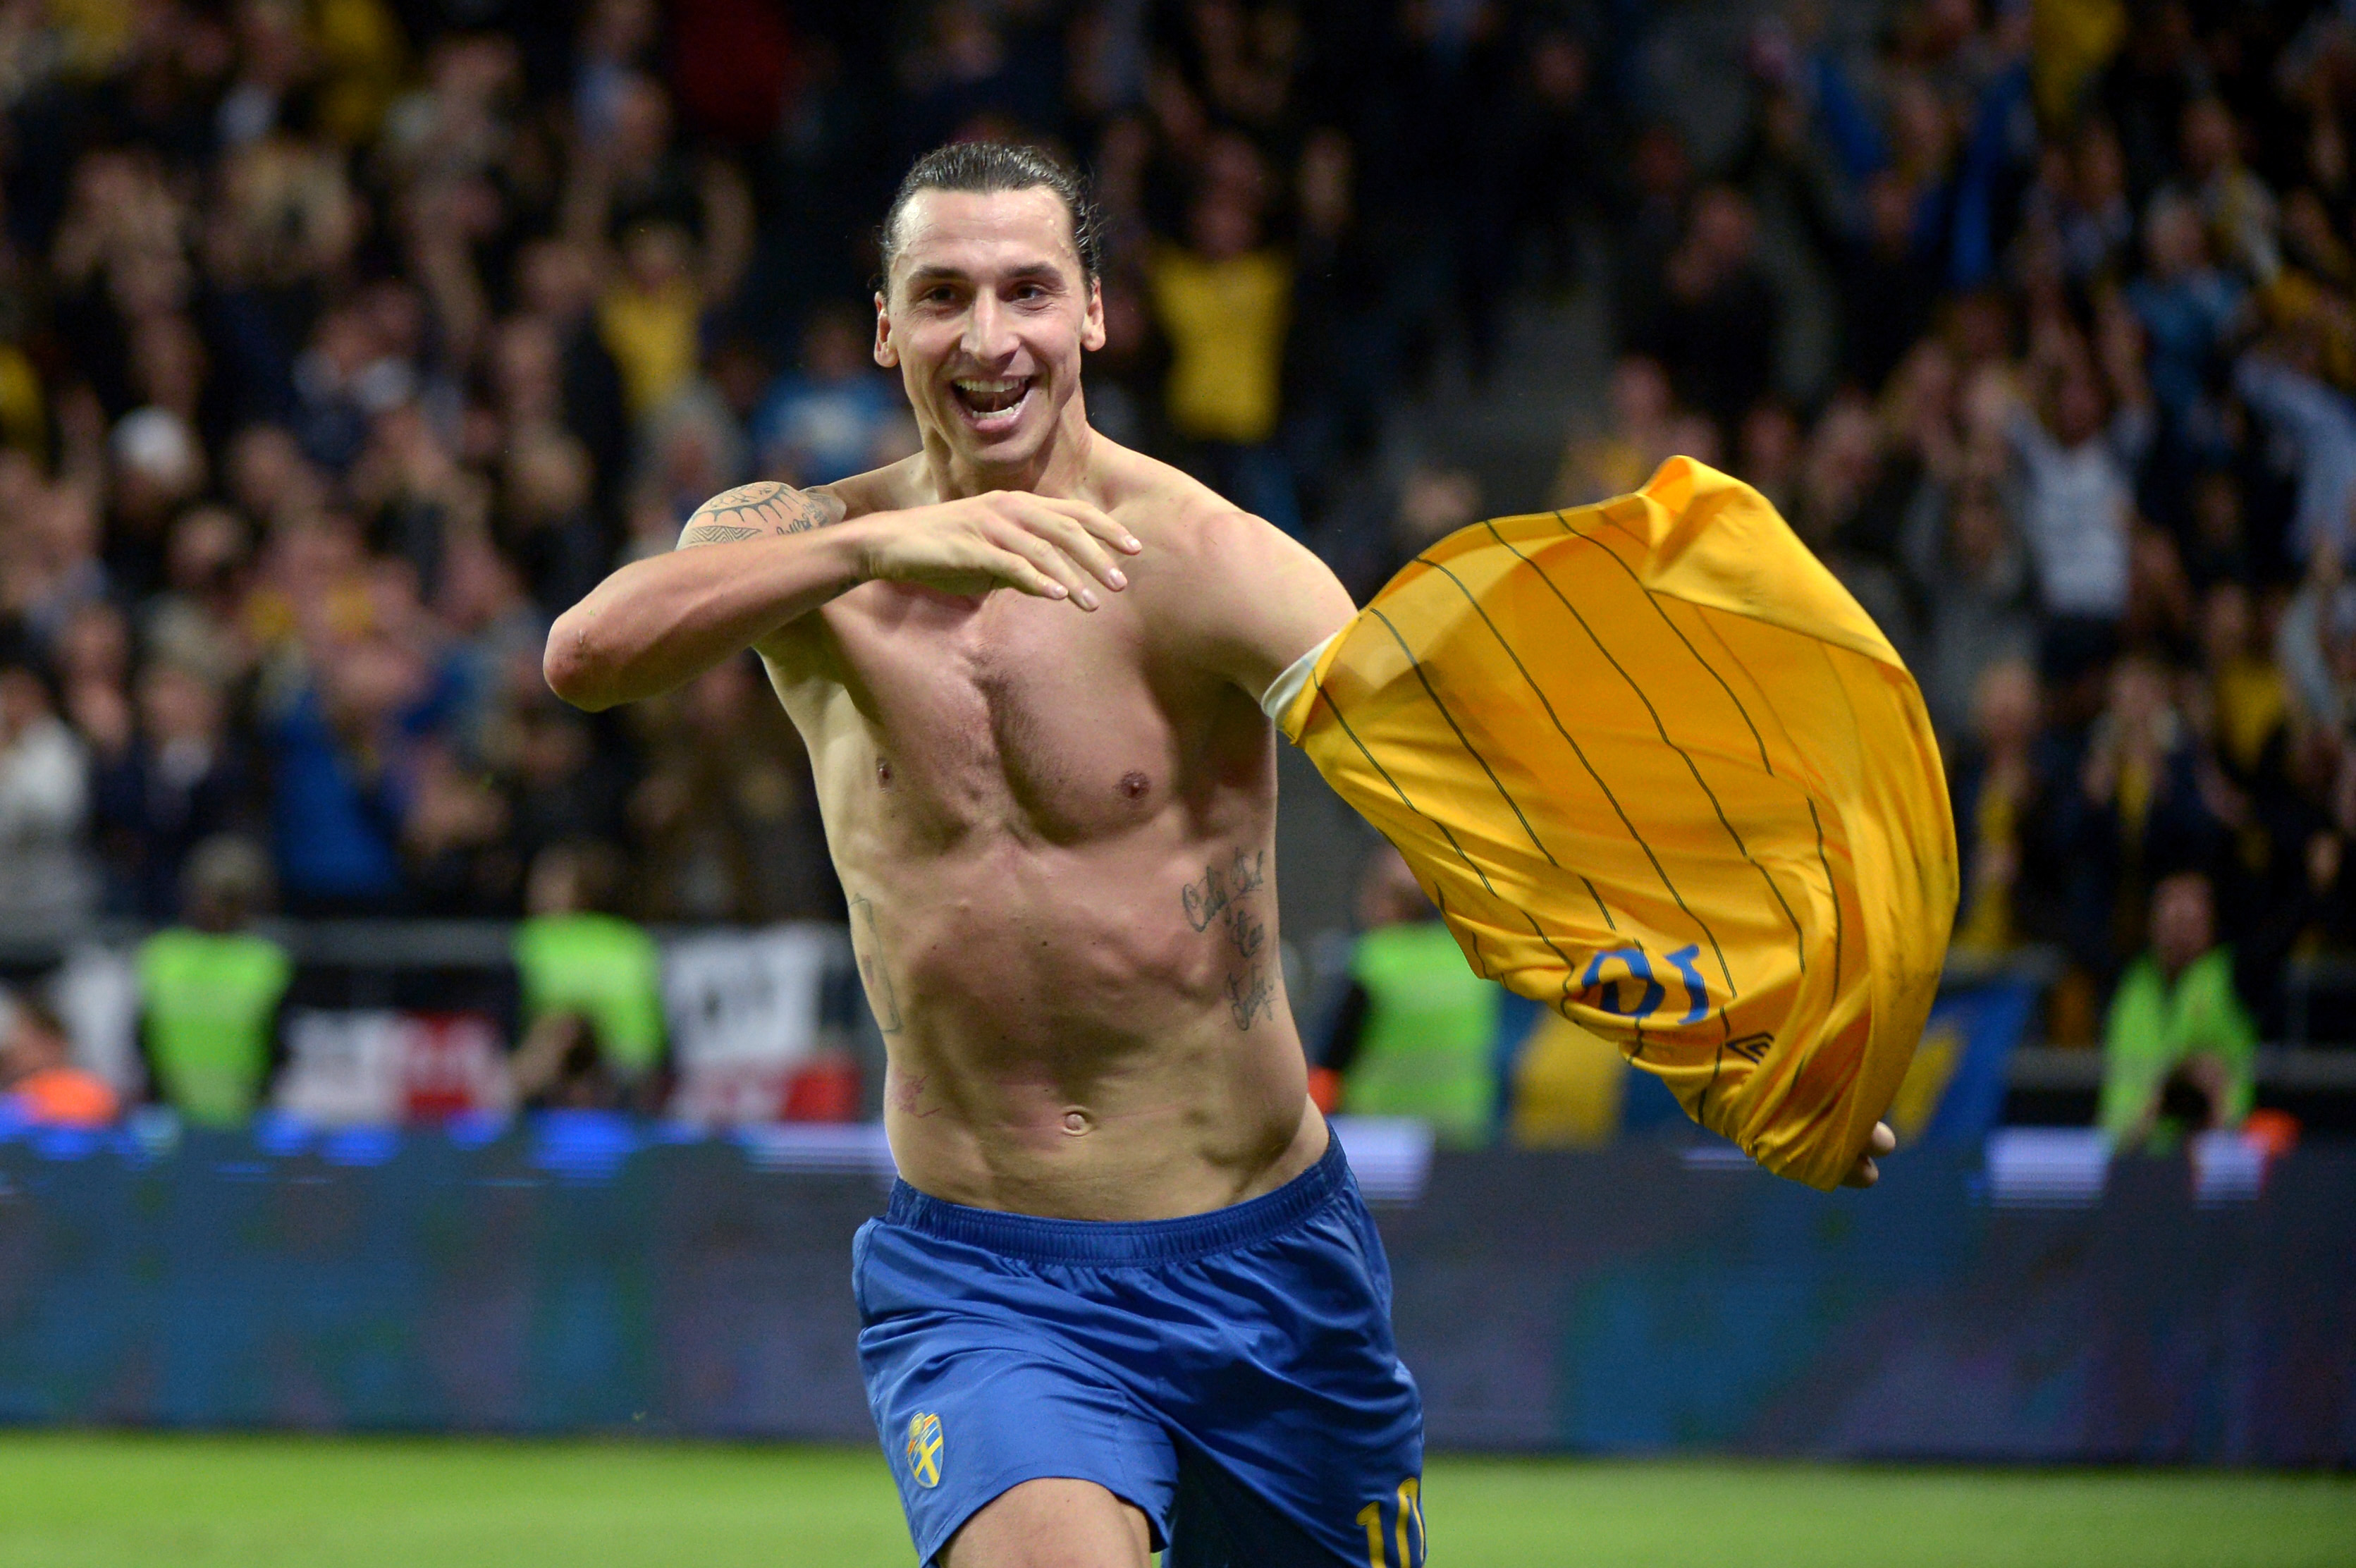 1: Det var väl egentligen aldrig några tvivel. Vår största stjärna, Zlatan Ibrahimovic, är också vår mest googlade.